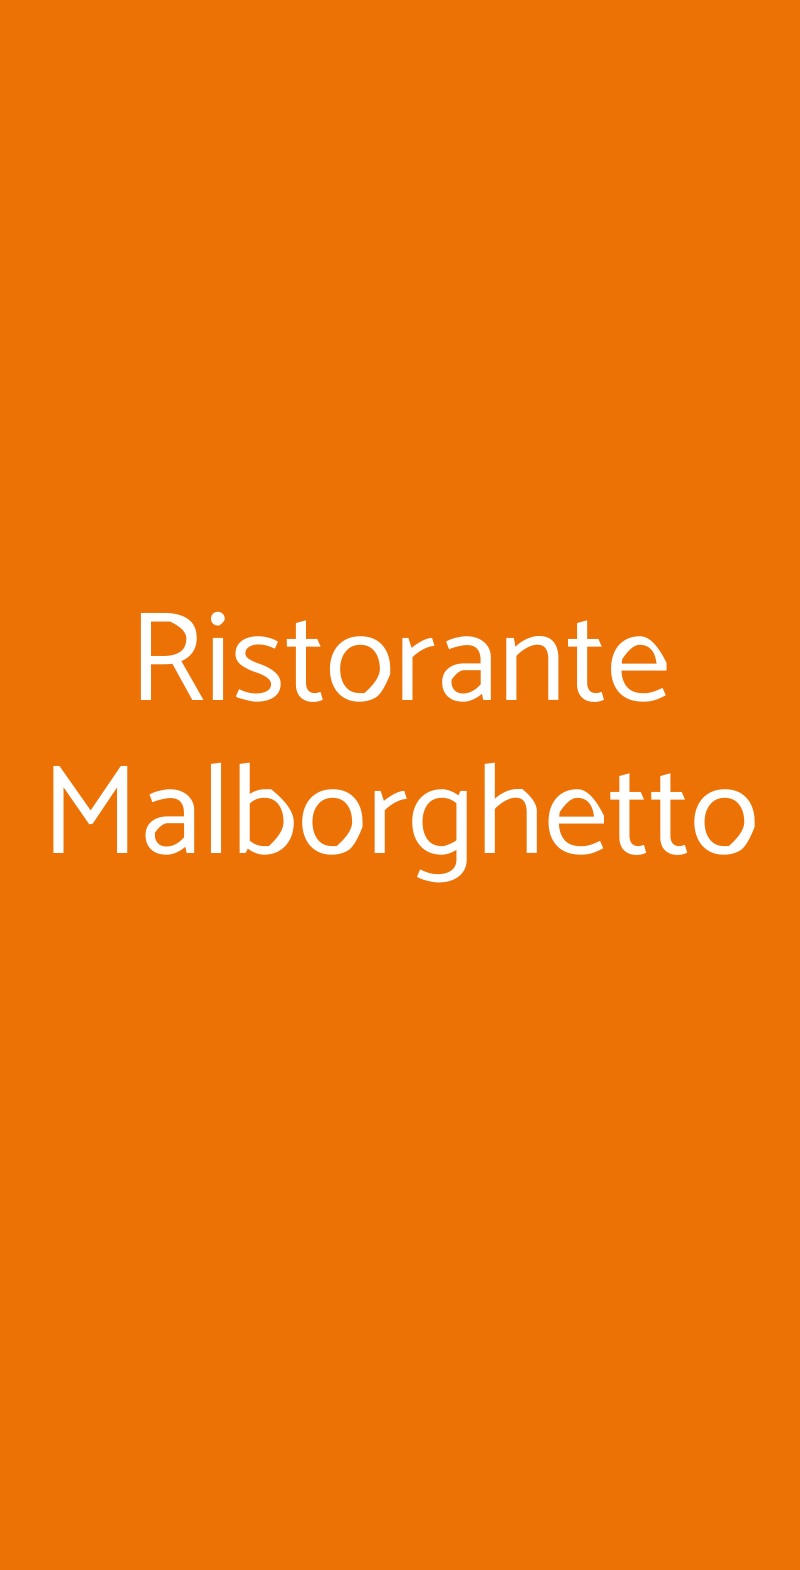 Ristorante Malborghetto Gaiole in Chianti menù 1 pagina